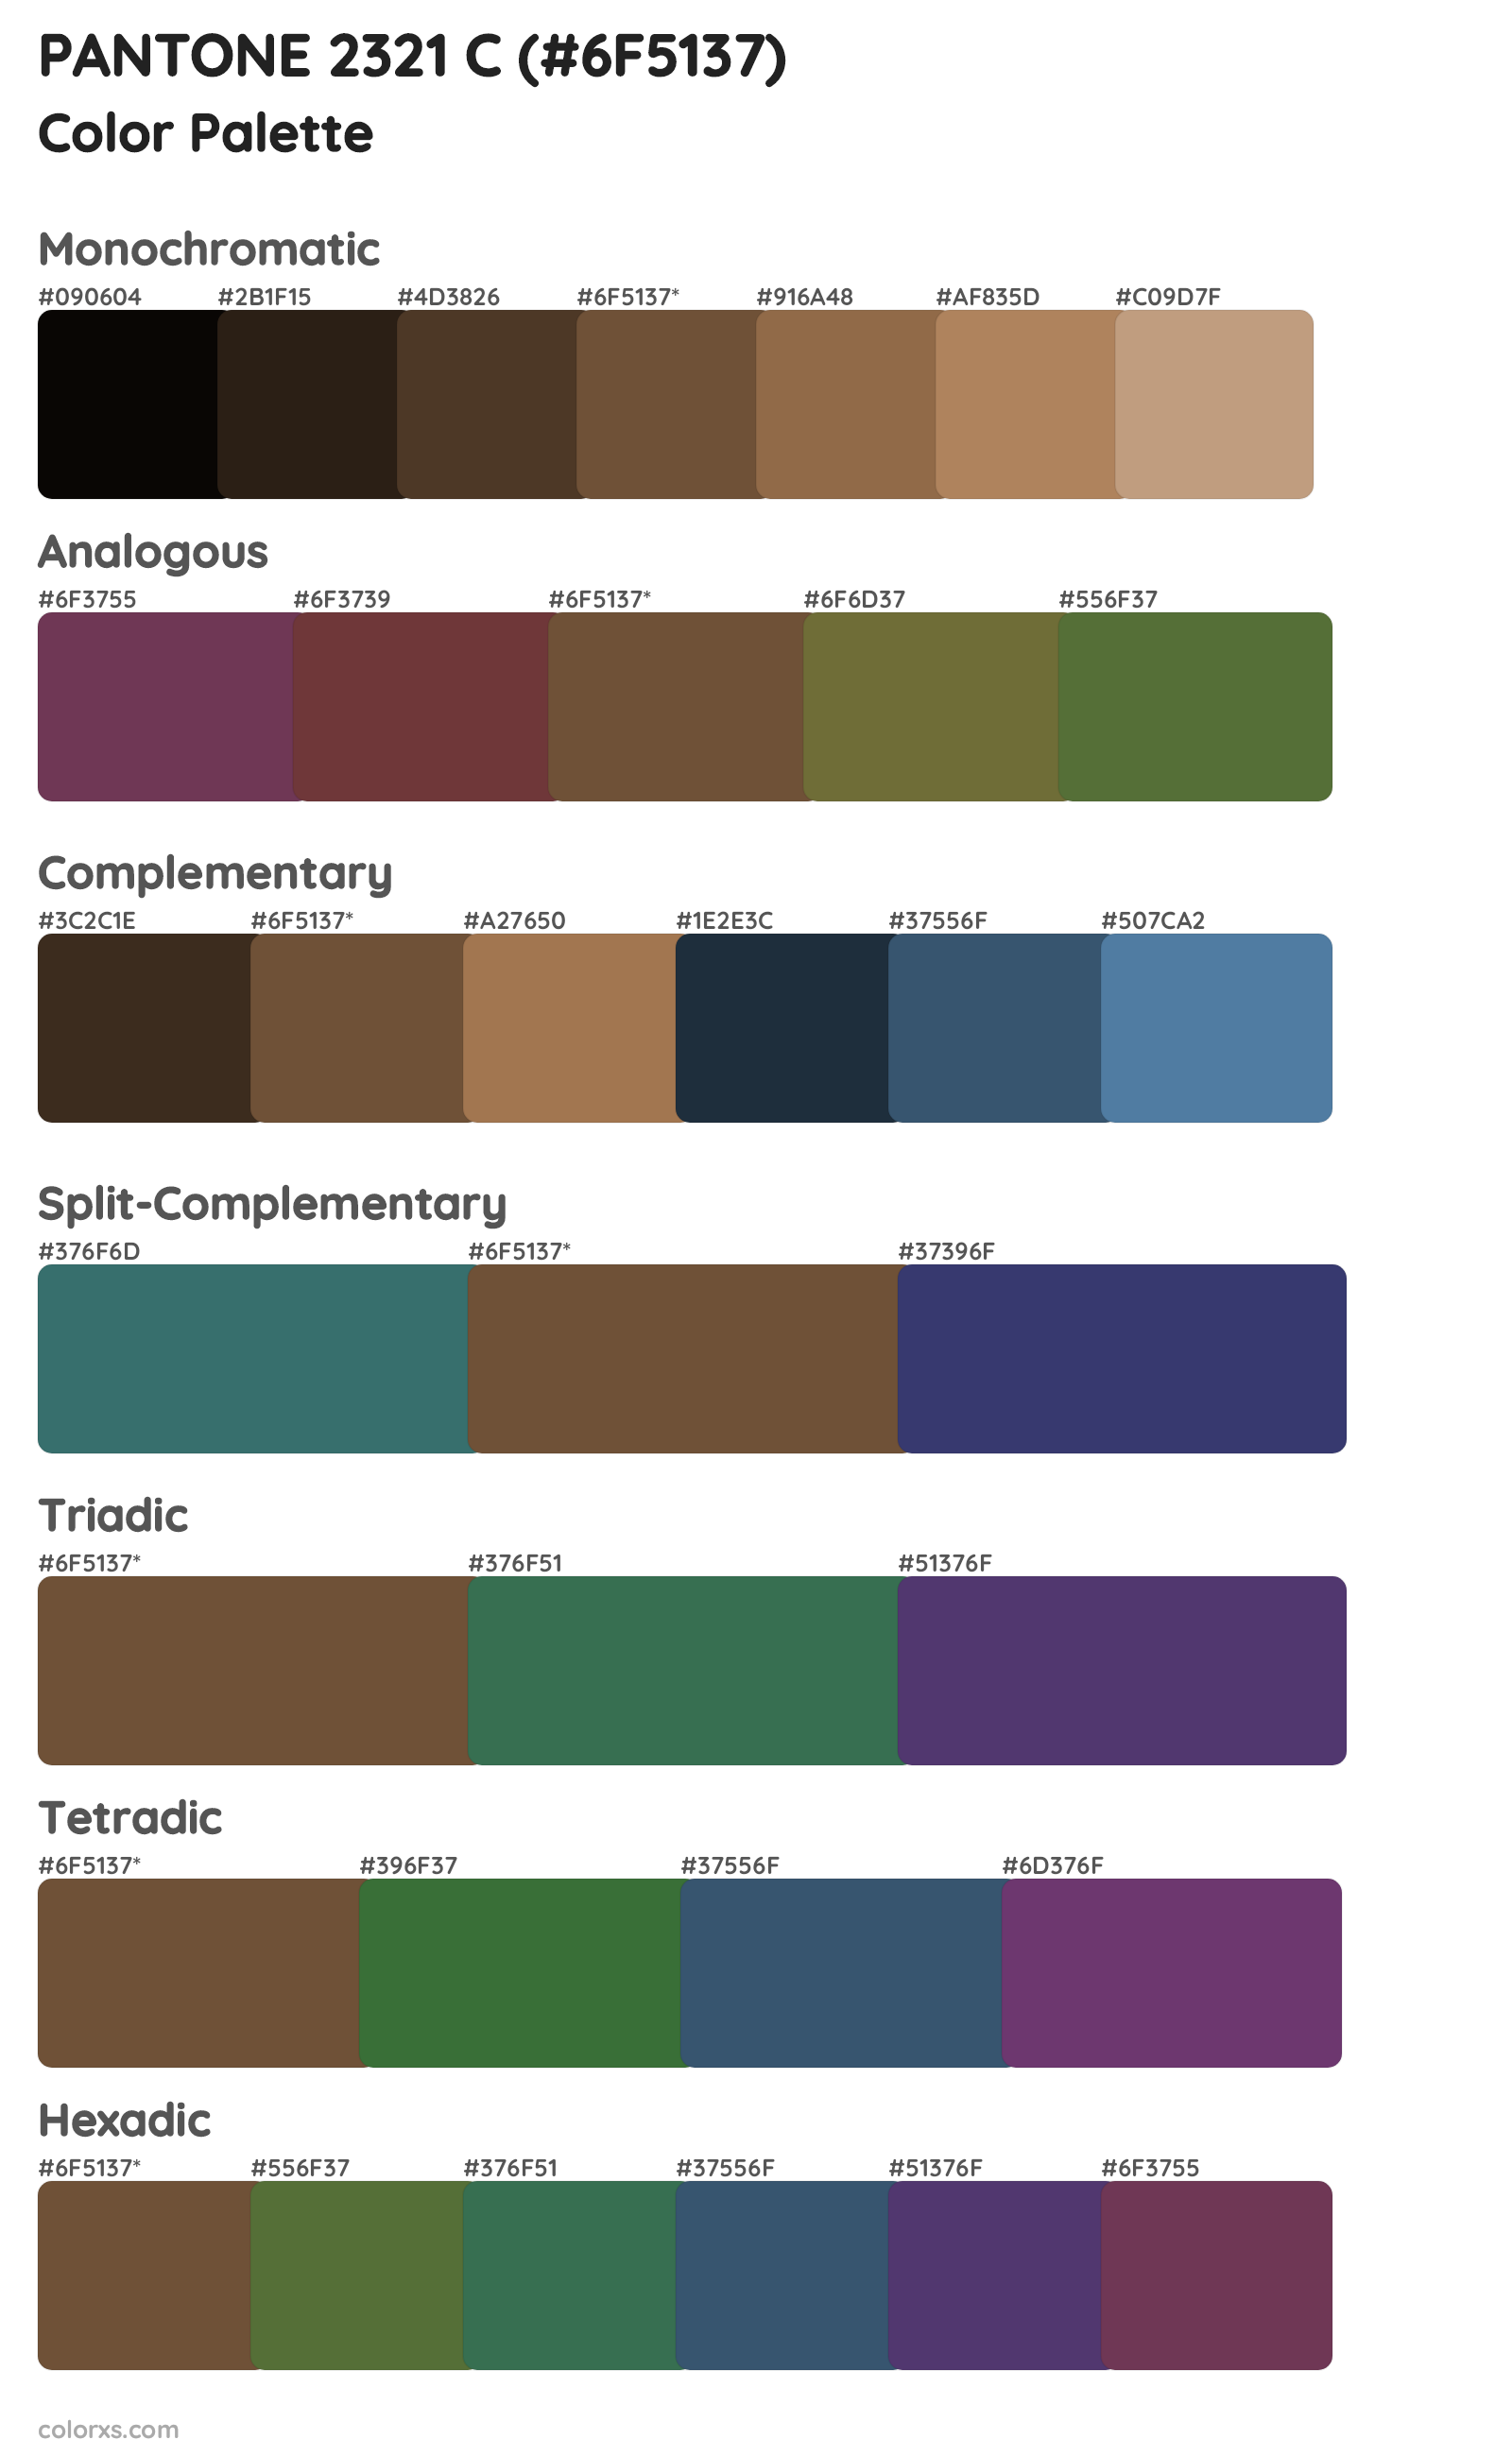 PANTONE 2321 C Color Scheme Palettes